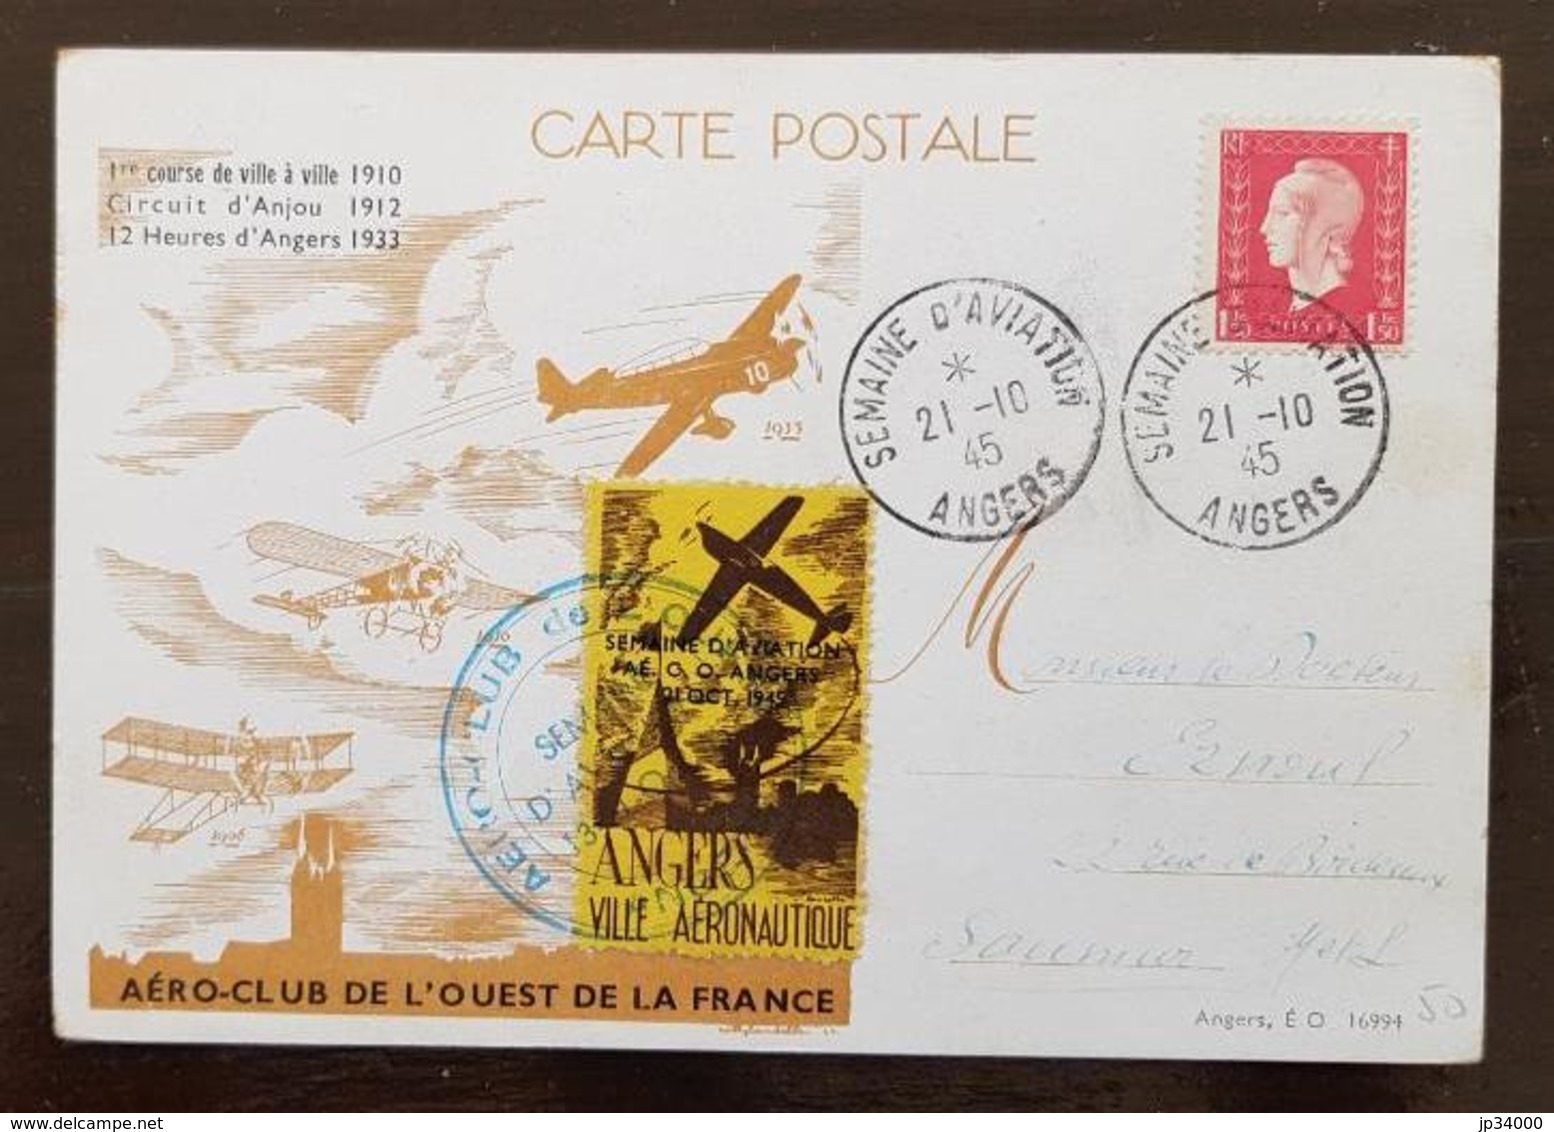 FRANCE  Semaine D'aviation ANGERS VILLE AERONAUTIQUE 21/10/1945  Vignette De L'AERO-CLUB De L'OUEST DE LA FRANCE . RARE - 1960-.... Lettres & Documents